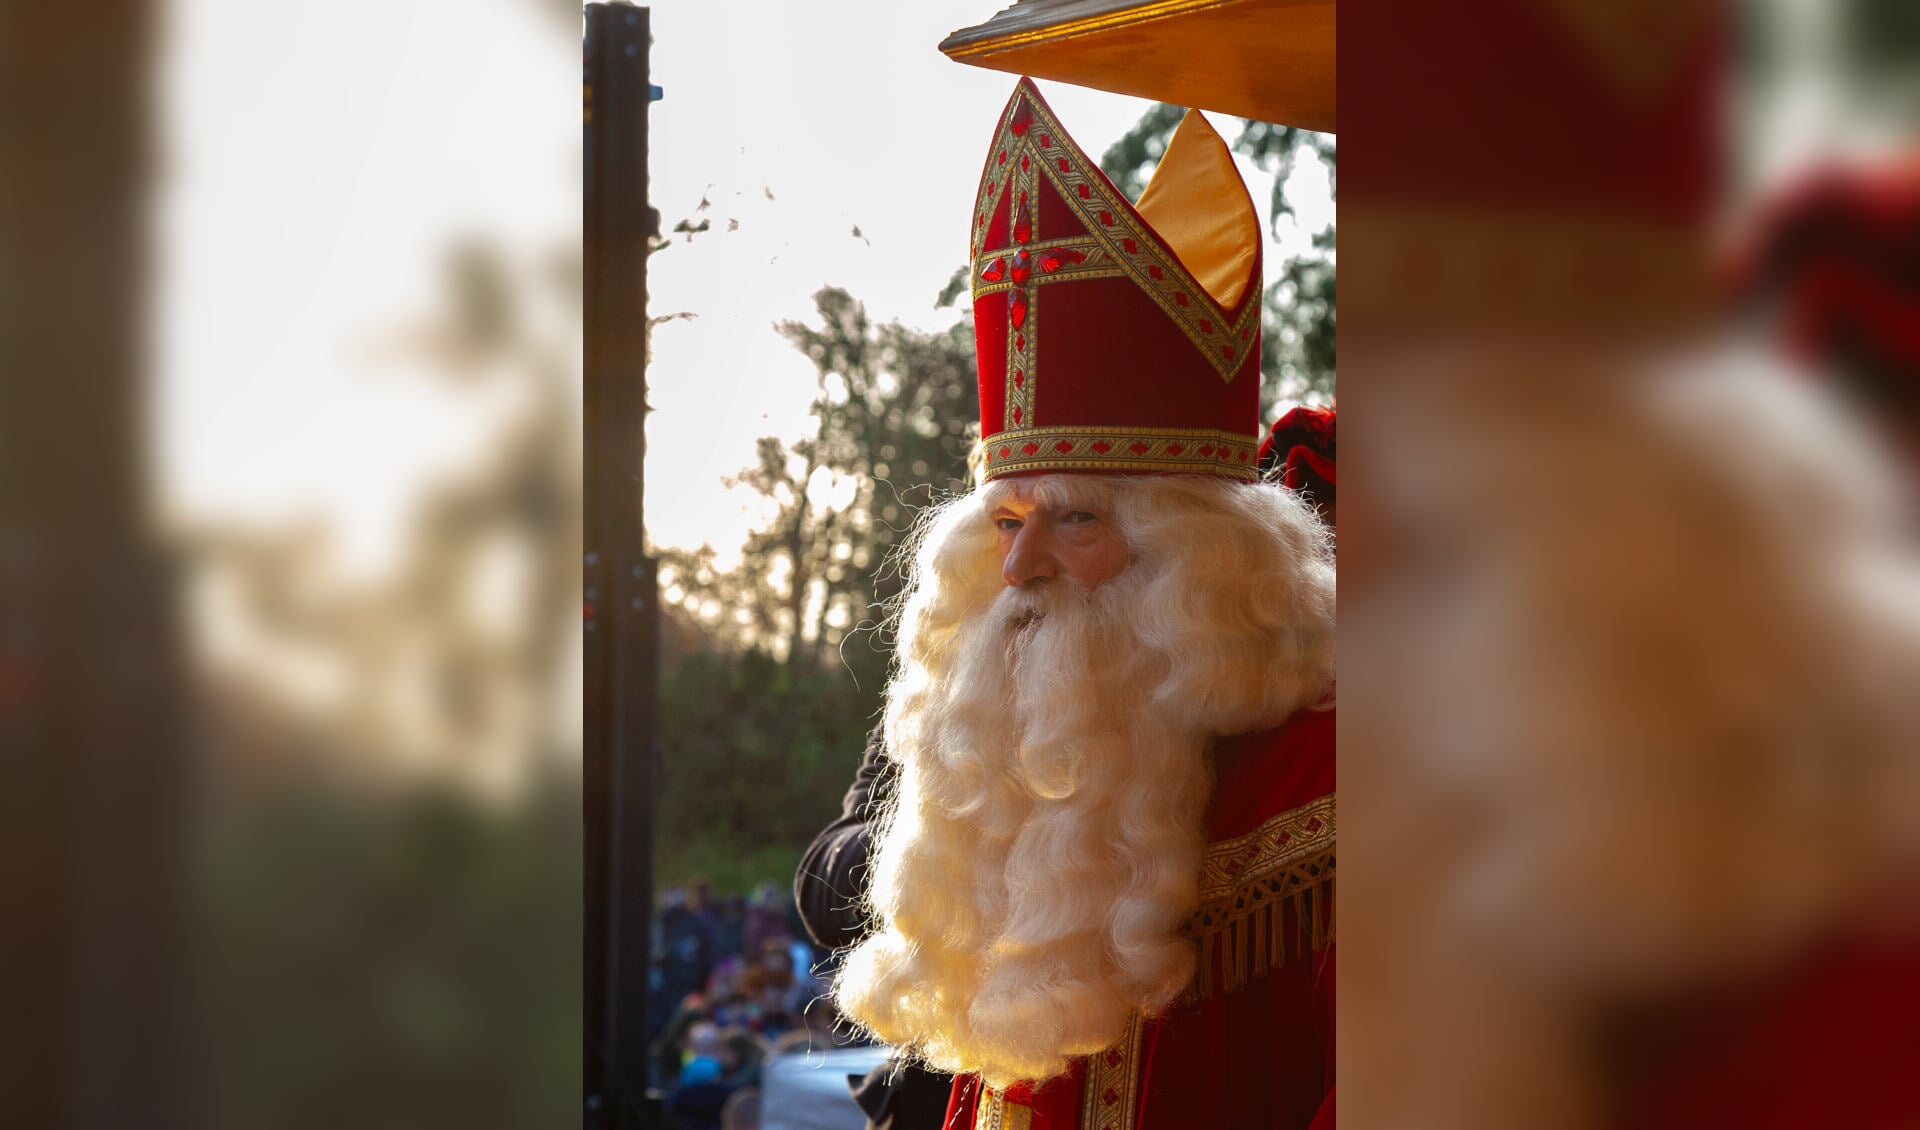 De Baarnse Sinterklaas was zelf op 5 jarige leeftijd al van zijn geloof af. 'Maar het was heel leuk het geheim voor mijn broertje te bewaren.'